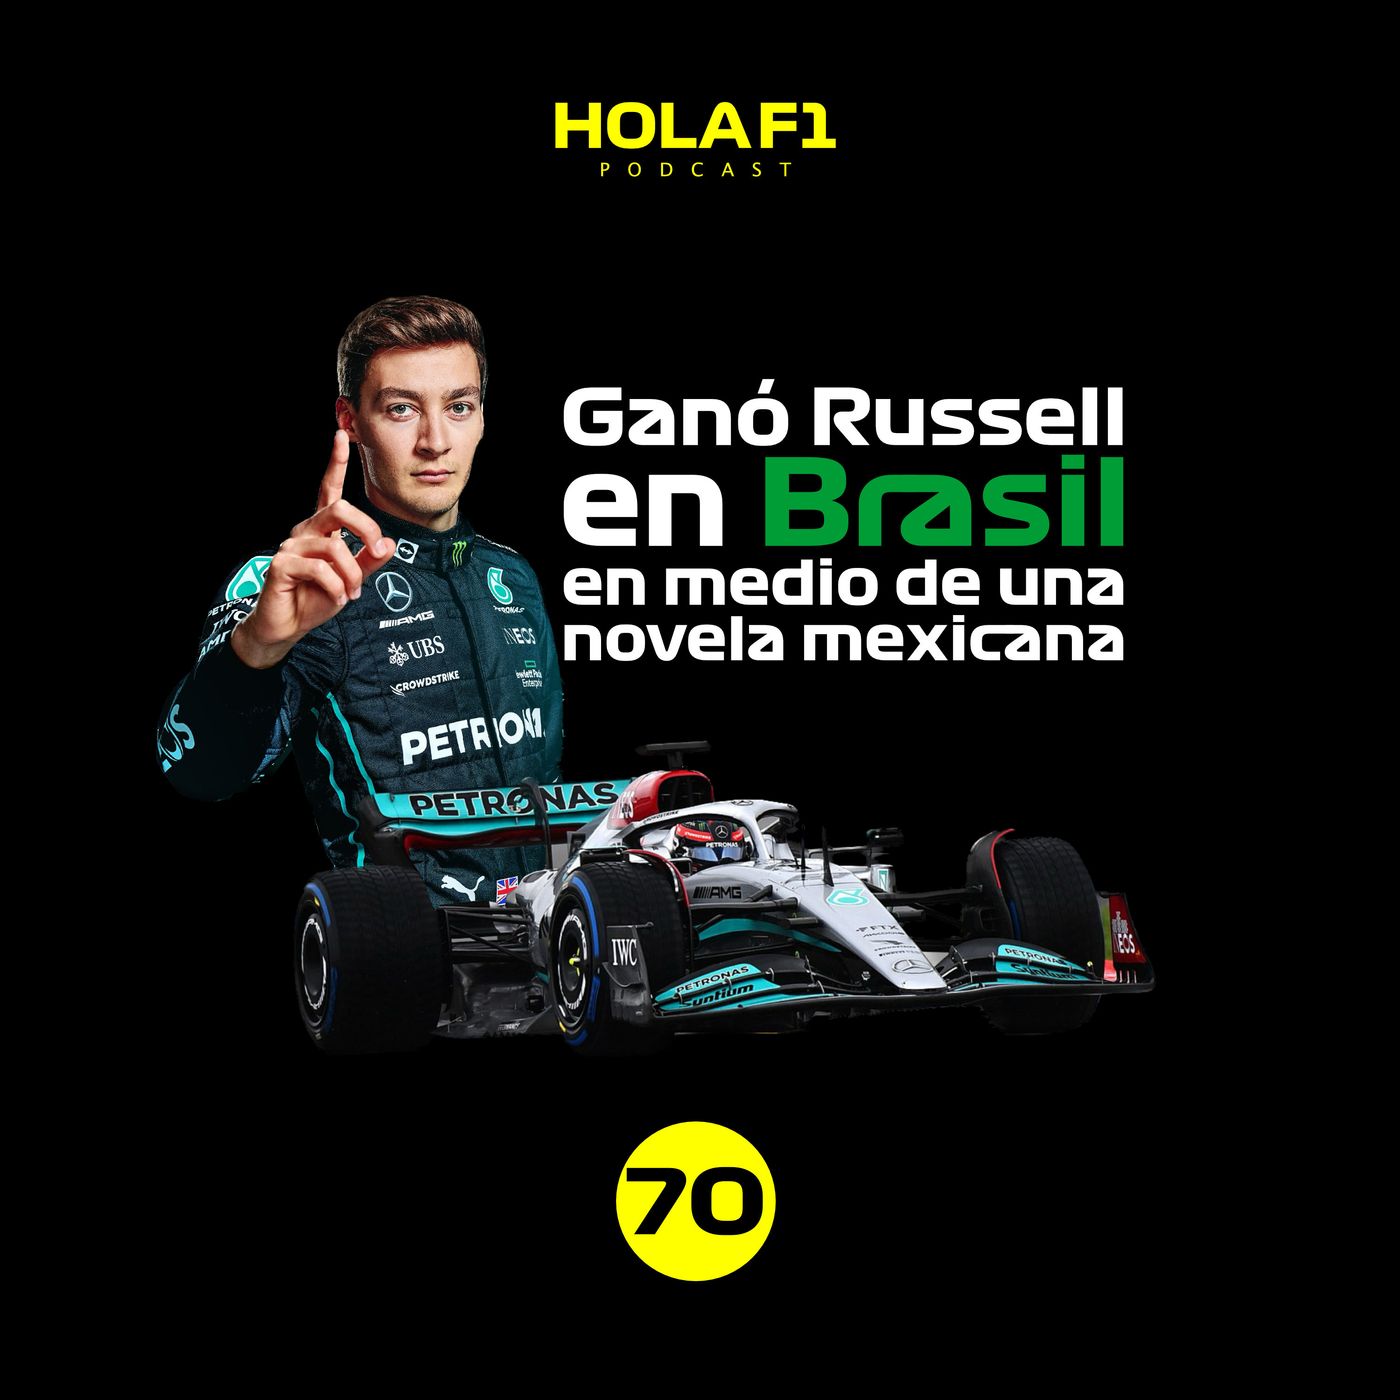 Ganó Russell en Brasil en medio de una novela mexicana